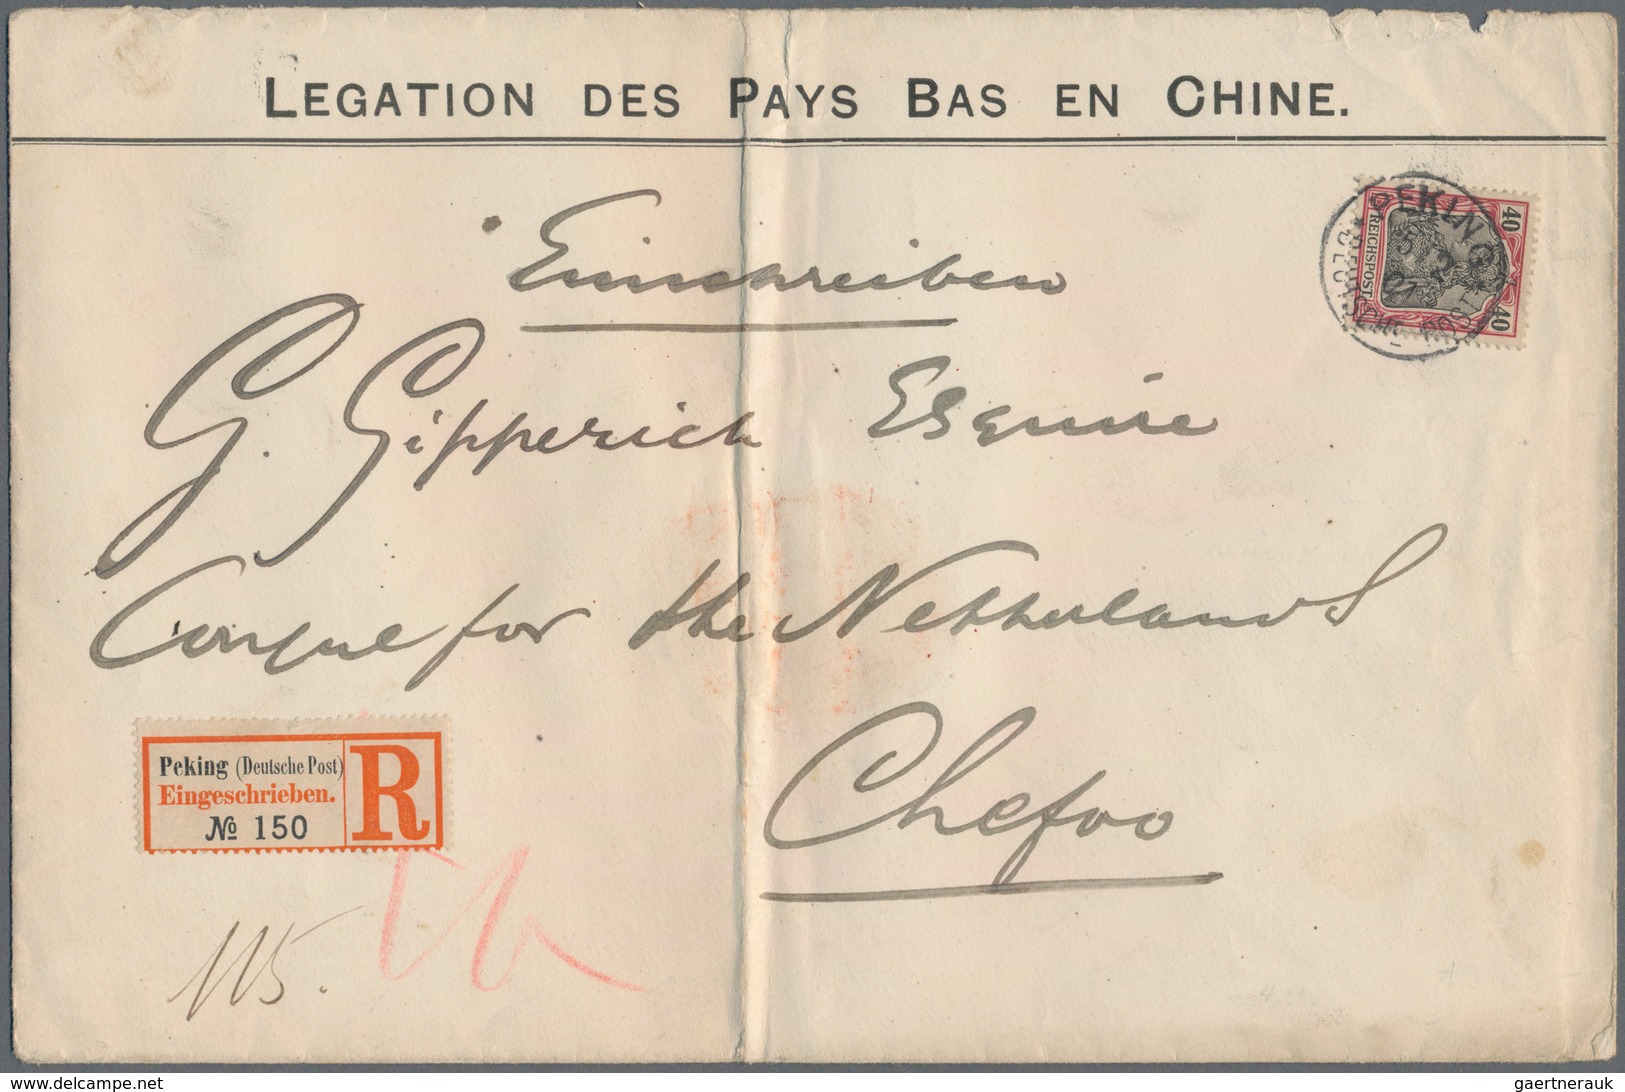 Deutsche Post In China: 1901: 40 Pf Germania Sogenannte Petschili-Ausgabe Auf Vordruckbrief "LEGATIO - Deutsche Post In China